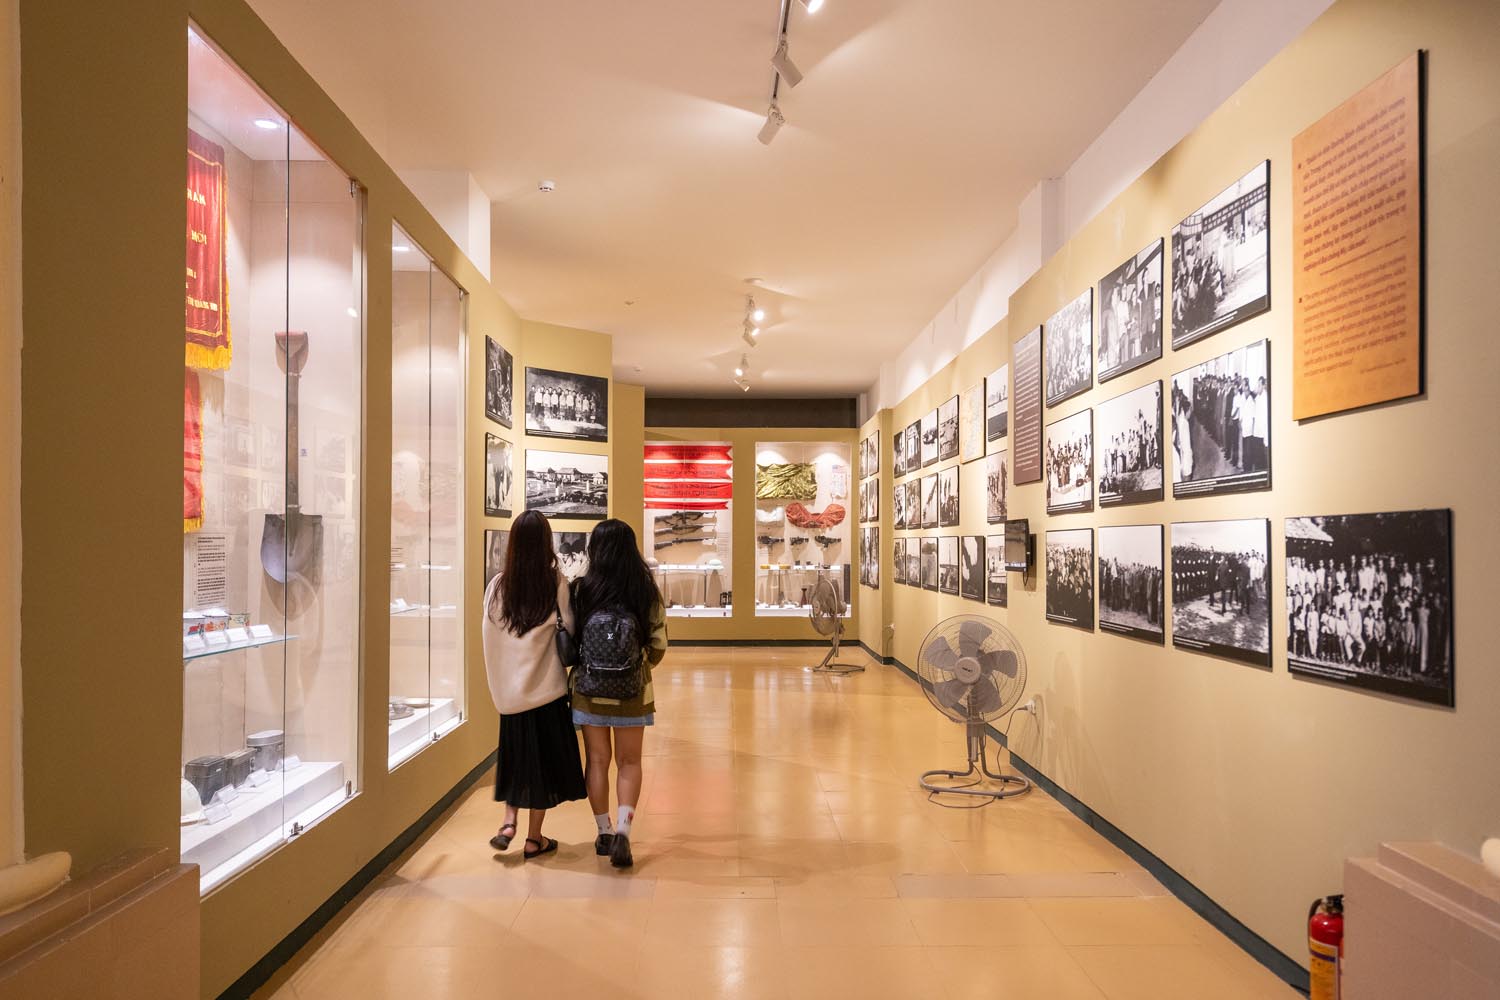 Bảo tàng Đồng Hới là nơi lý tưởng để du khách tìm hiểu về lịch sử và văn hóa nơi đây.